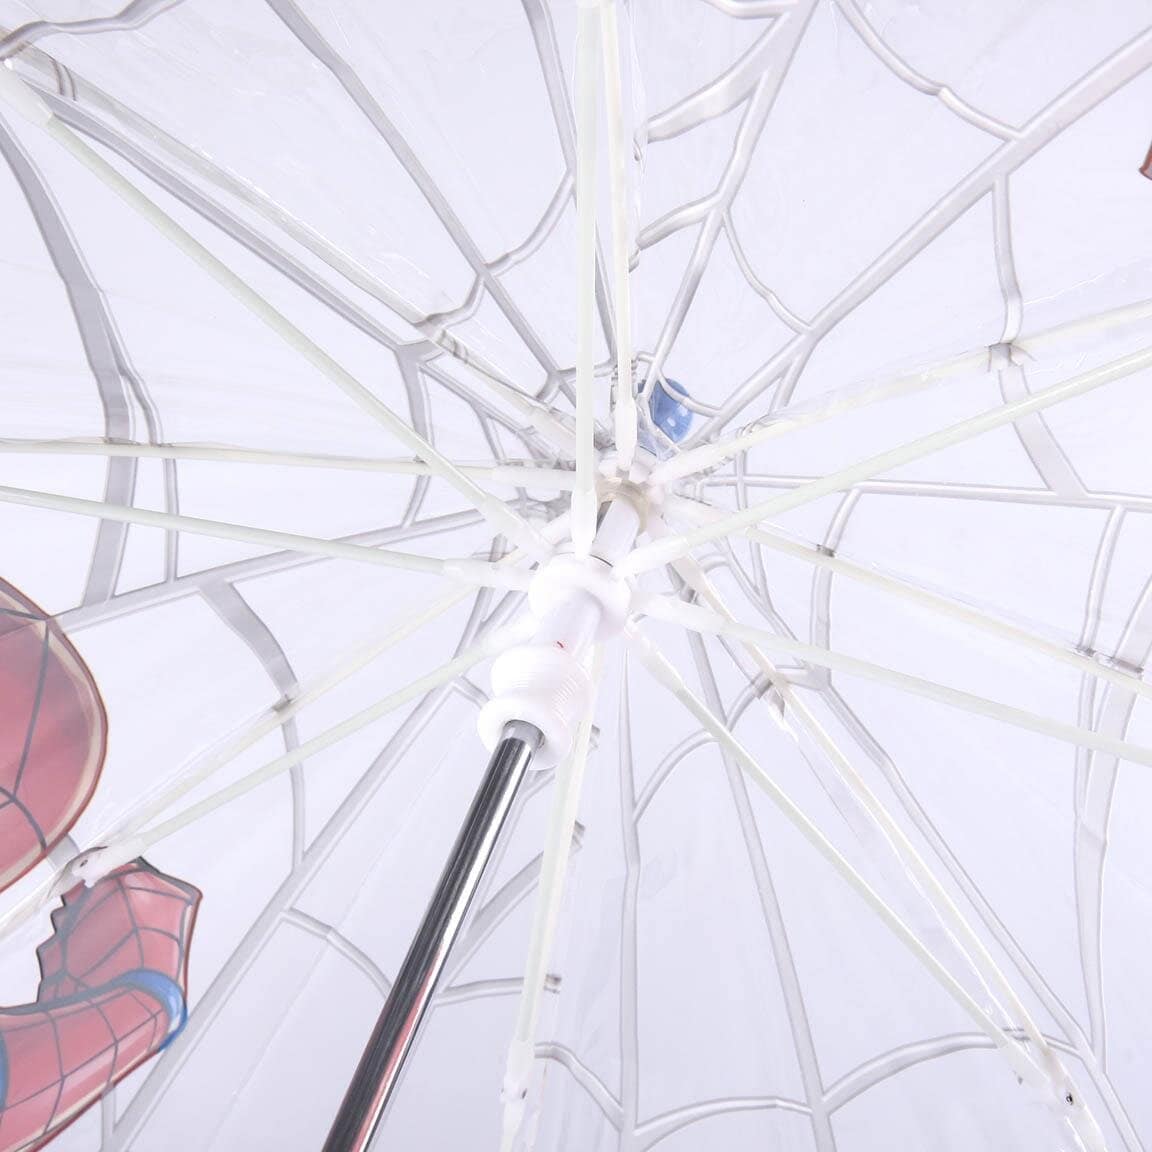 Spiderman - Kinderregenschirm